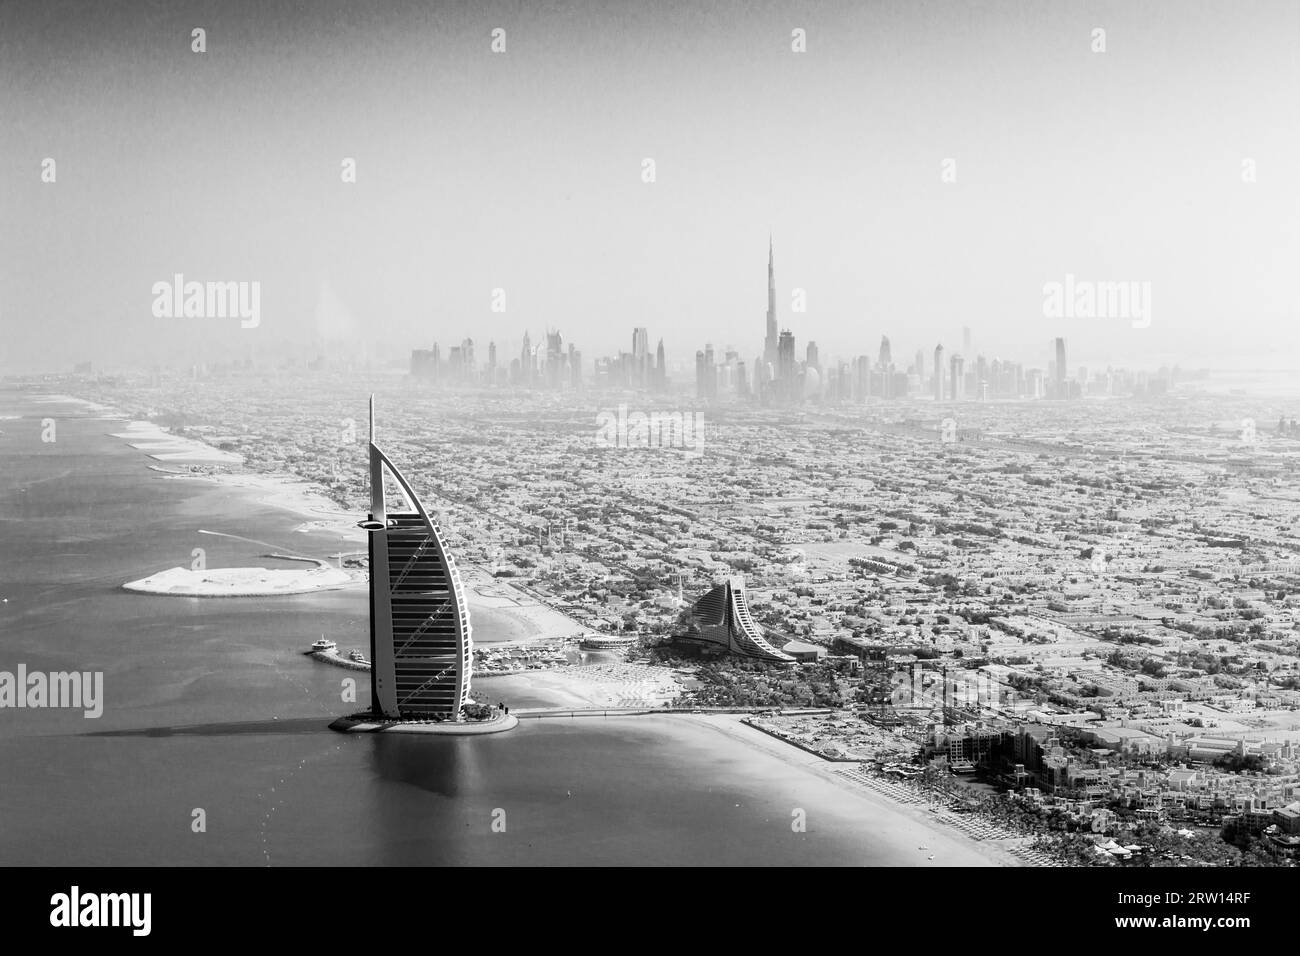 Dubái, Emiratos Árabes Unidos, 17 de octubre de 2014: El famoso hotel Burj Al Arab y el horizonte de Dubai tomados de un hidroavión en blanco y negro Foto de stock